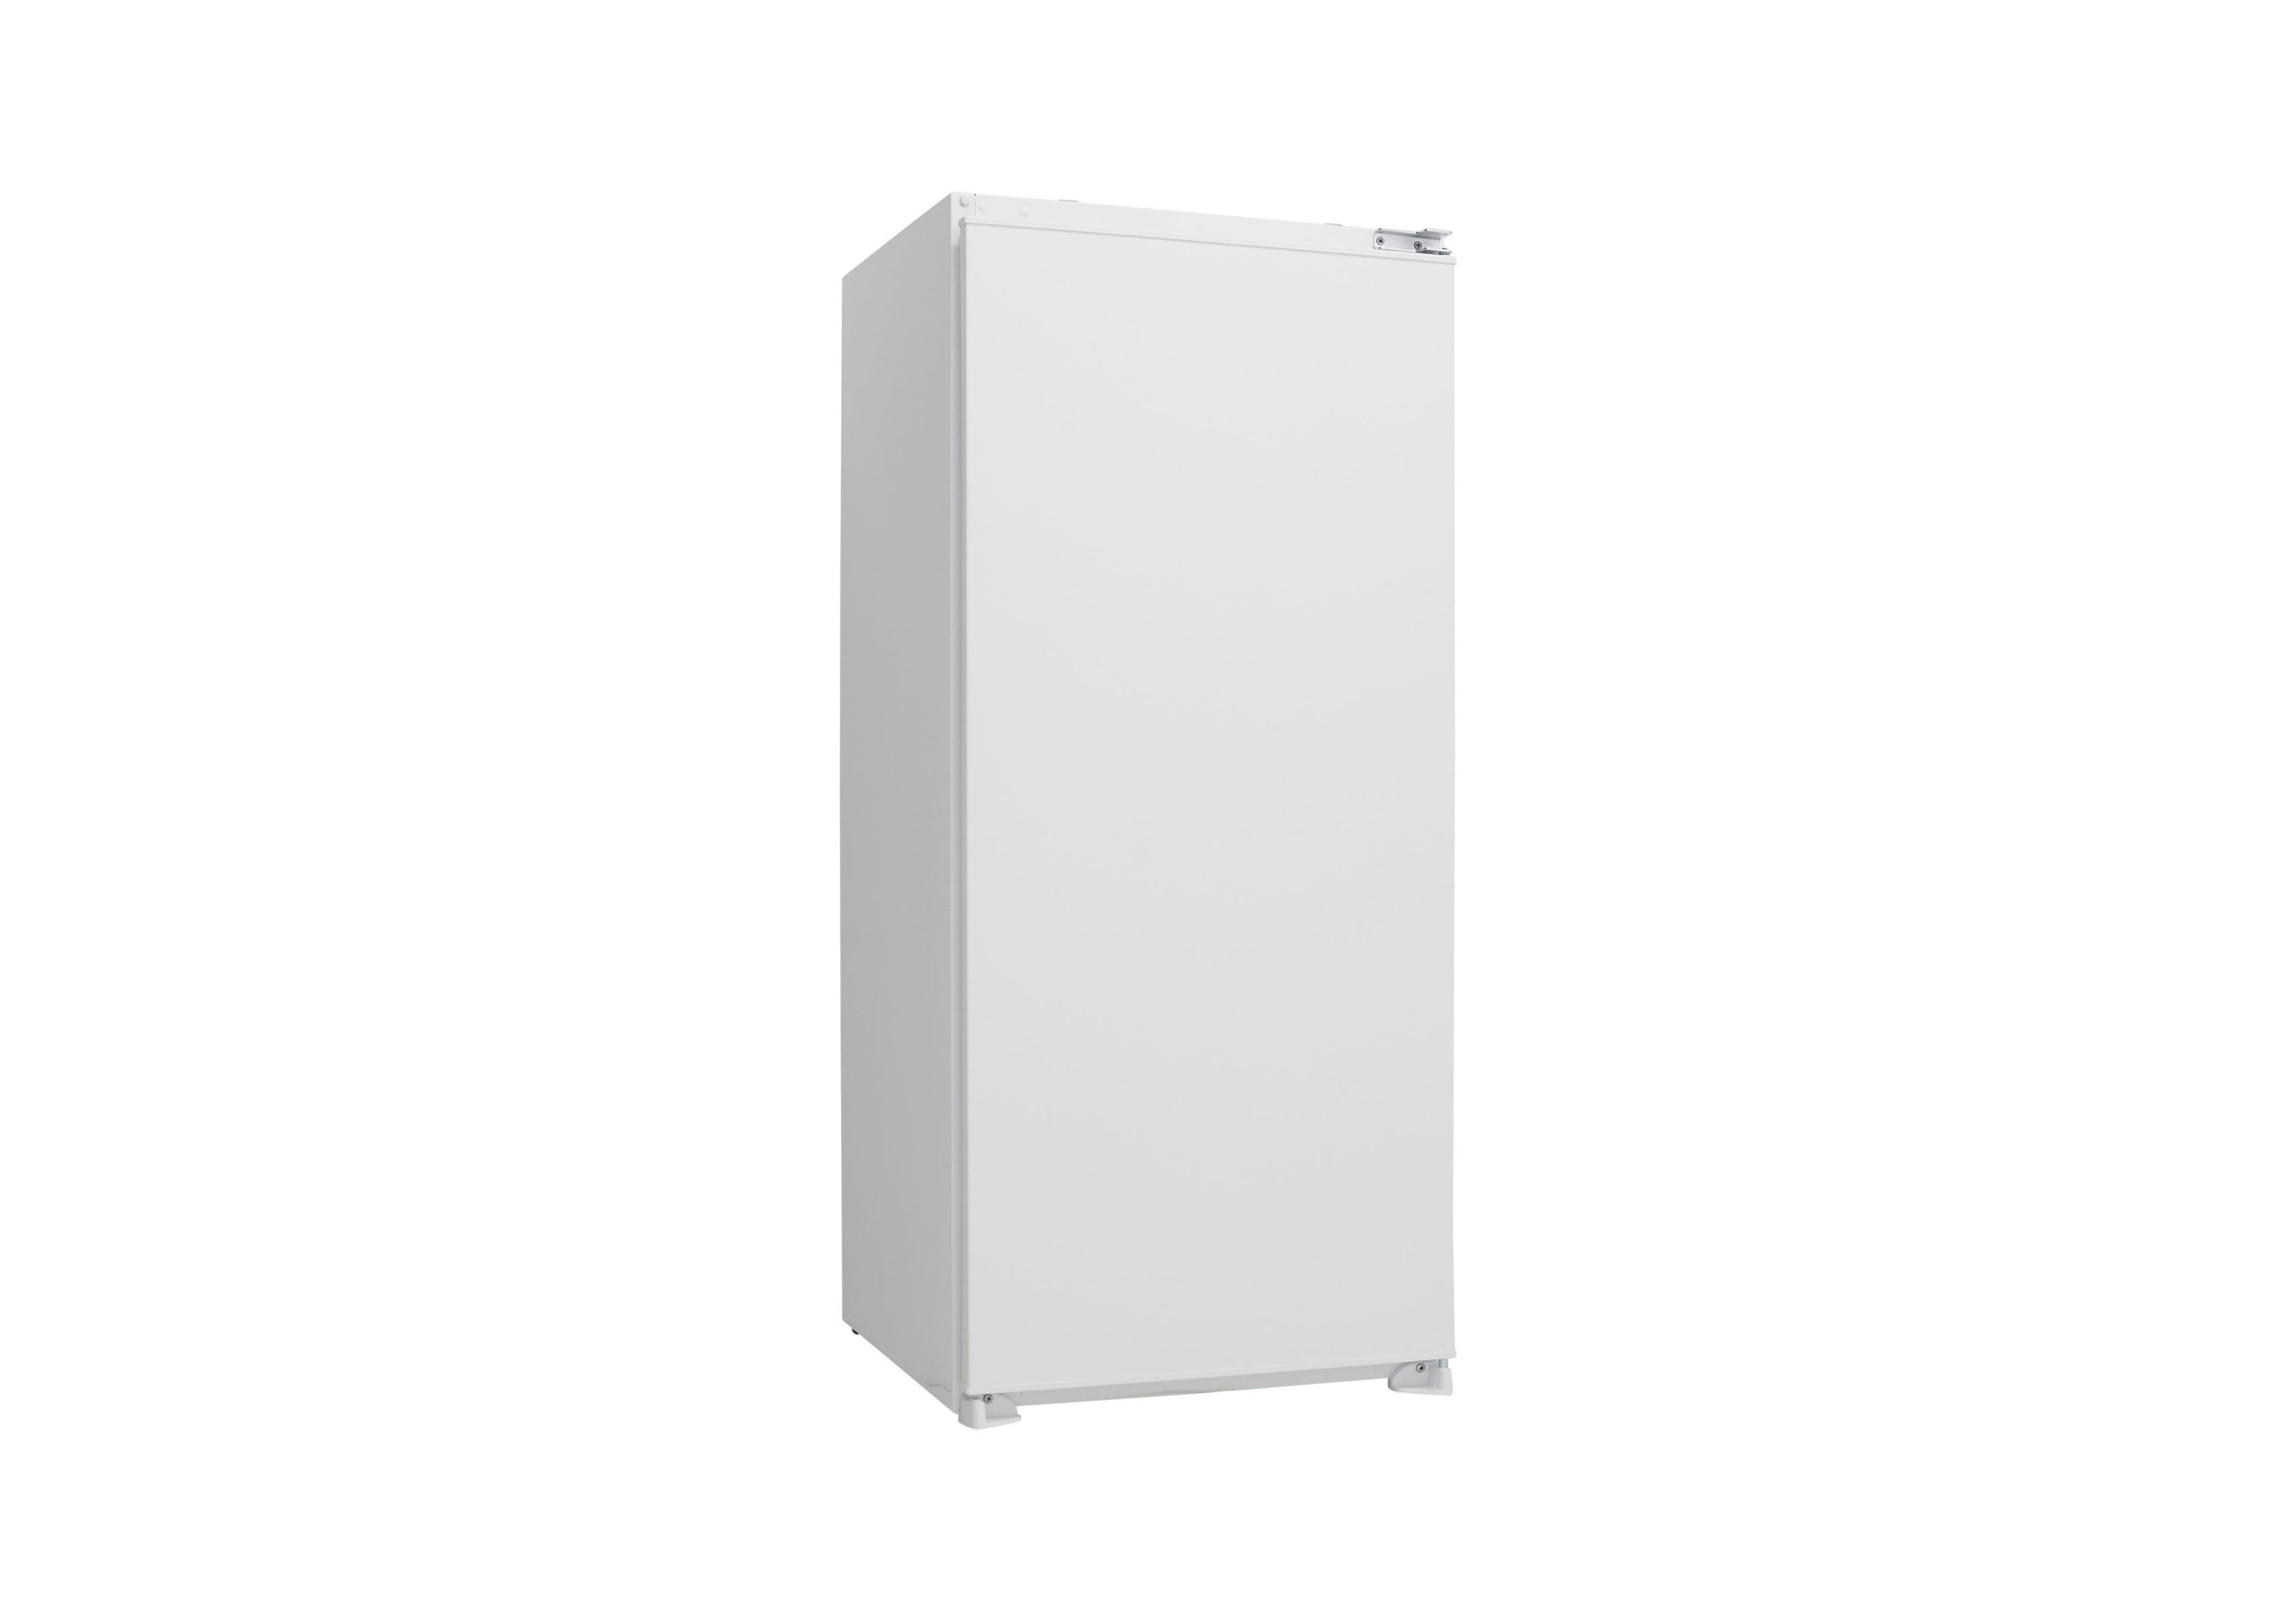 Kühlschrank 200 Liter Einbaukühlschrank Schlepptür 122 cm Vollraum Respekta